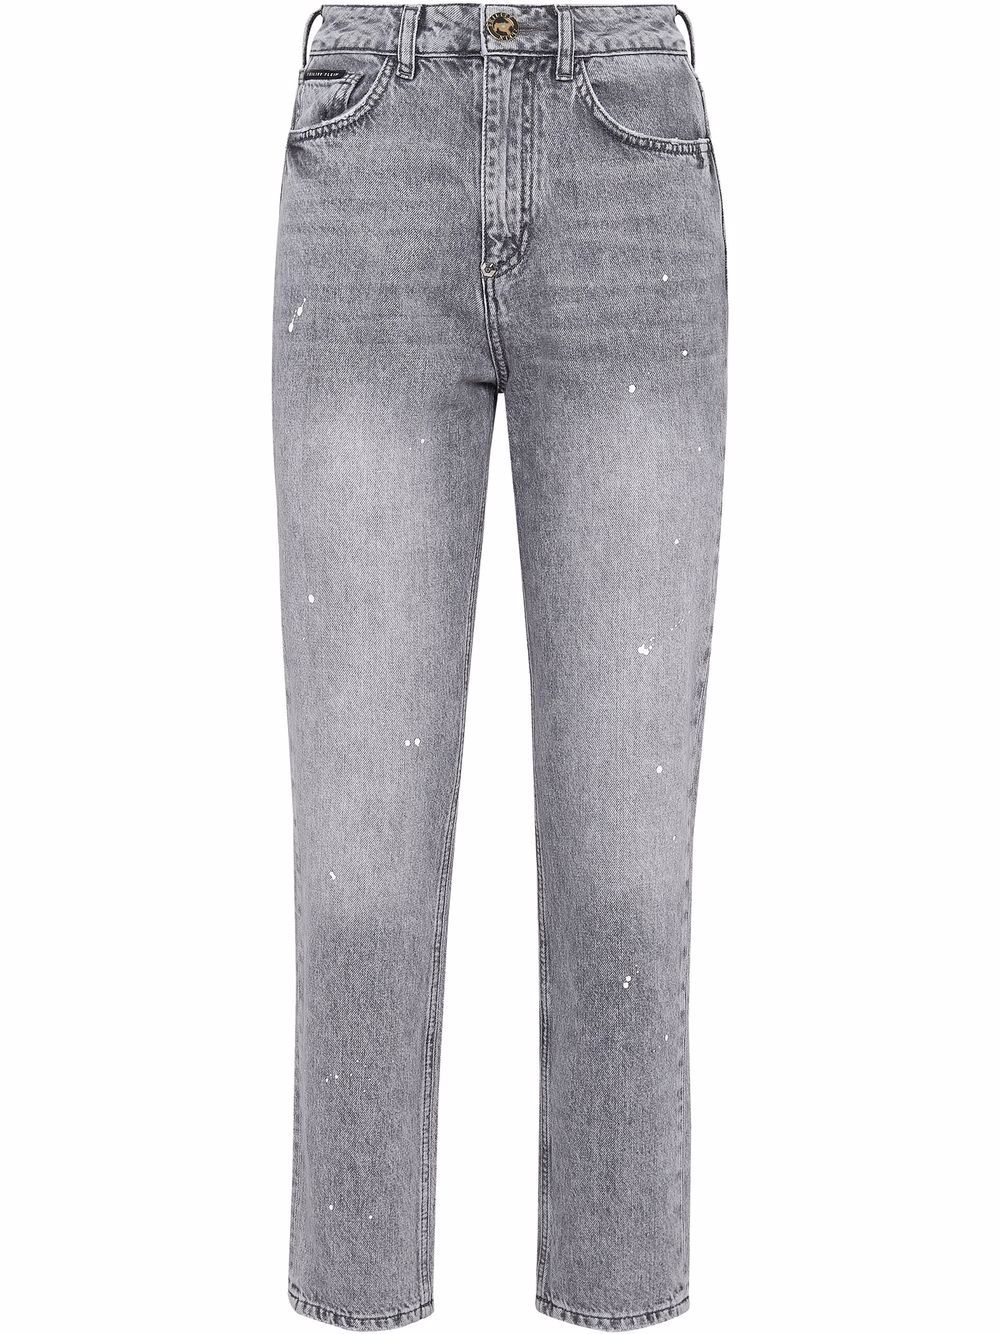 фото Philipp plein укороченные джинсы с завышенной талией